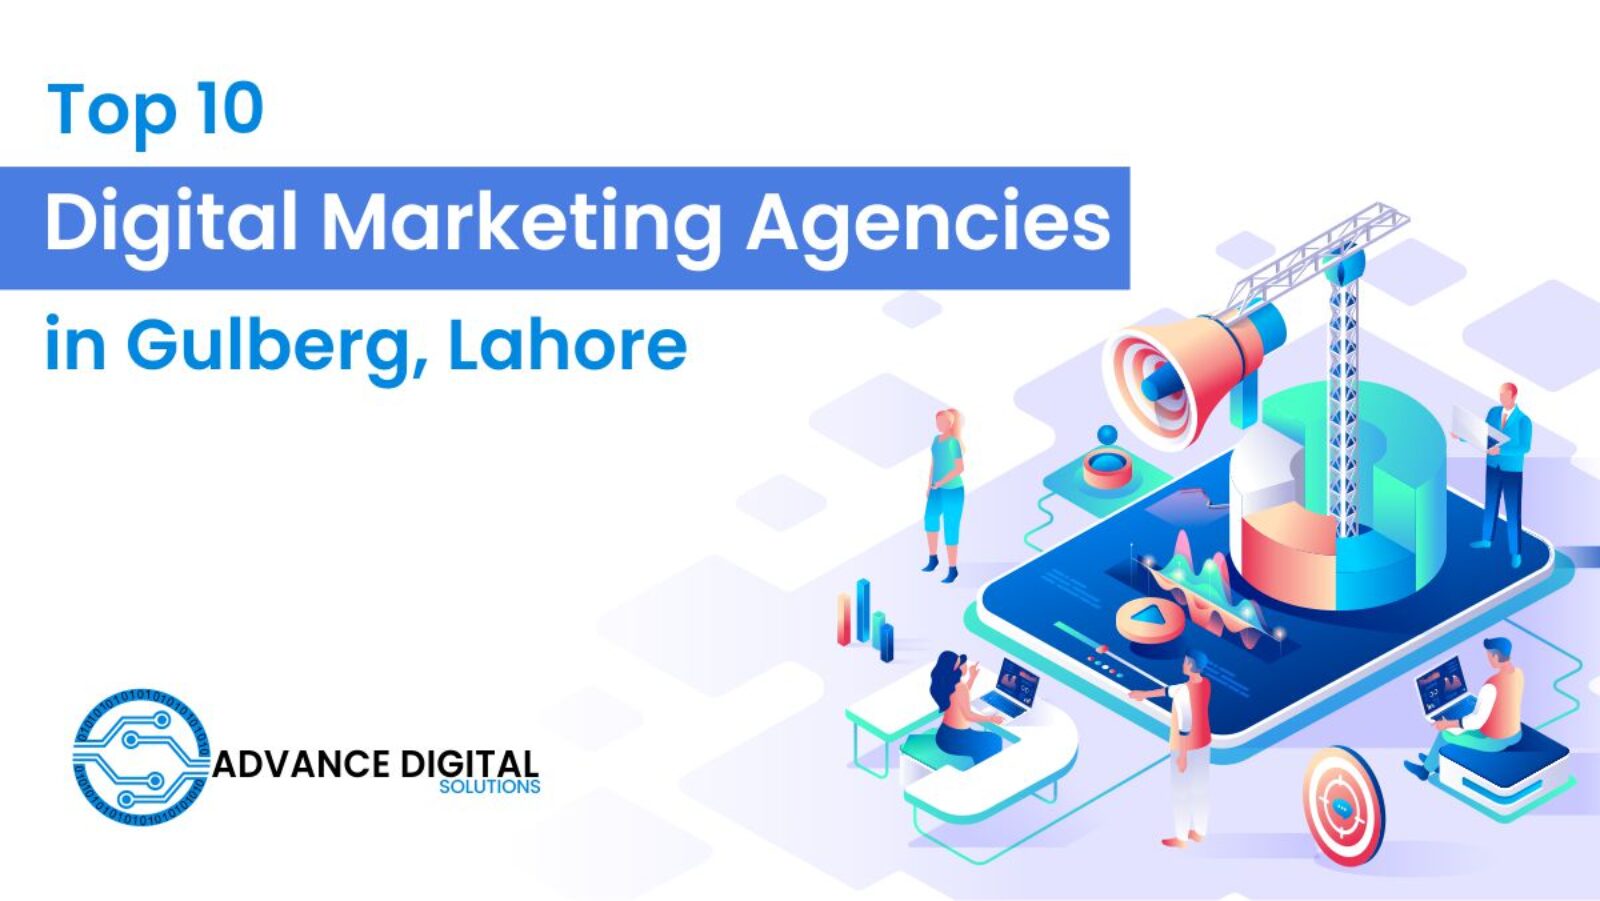 Top 10 Digital Marketing Agencies in Gulberg, Lahore